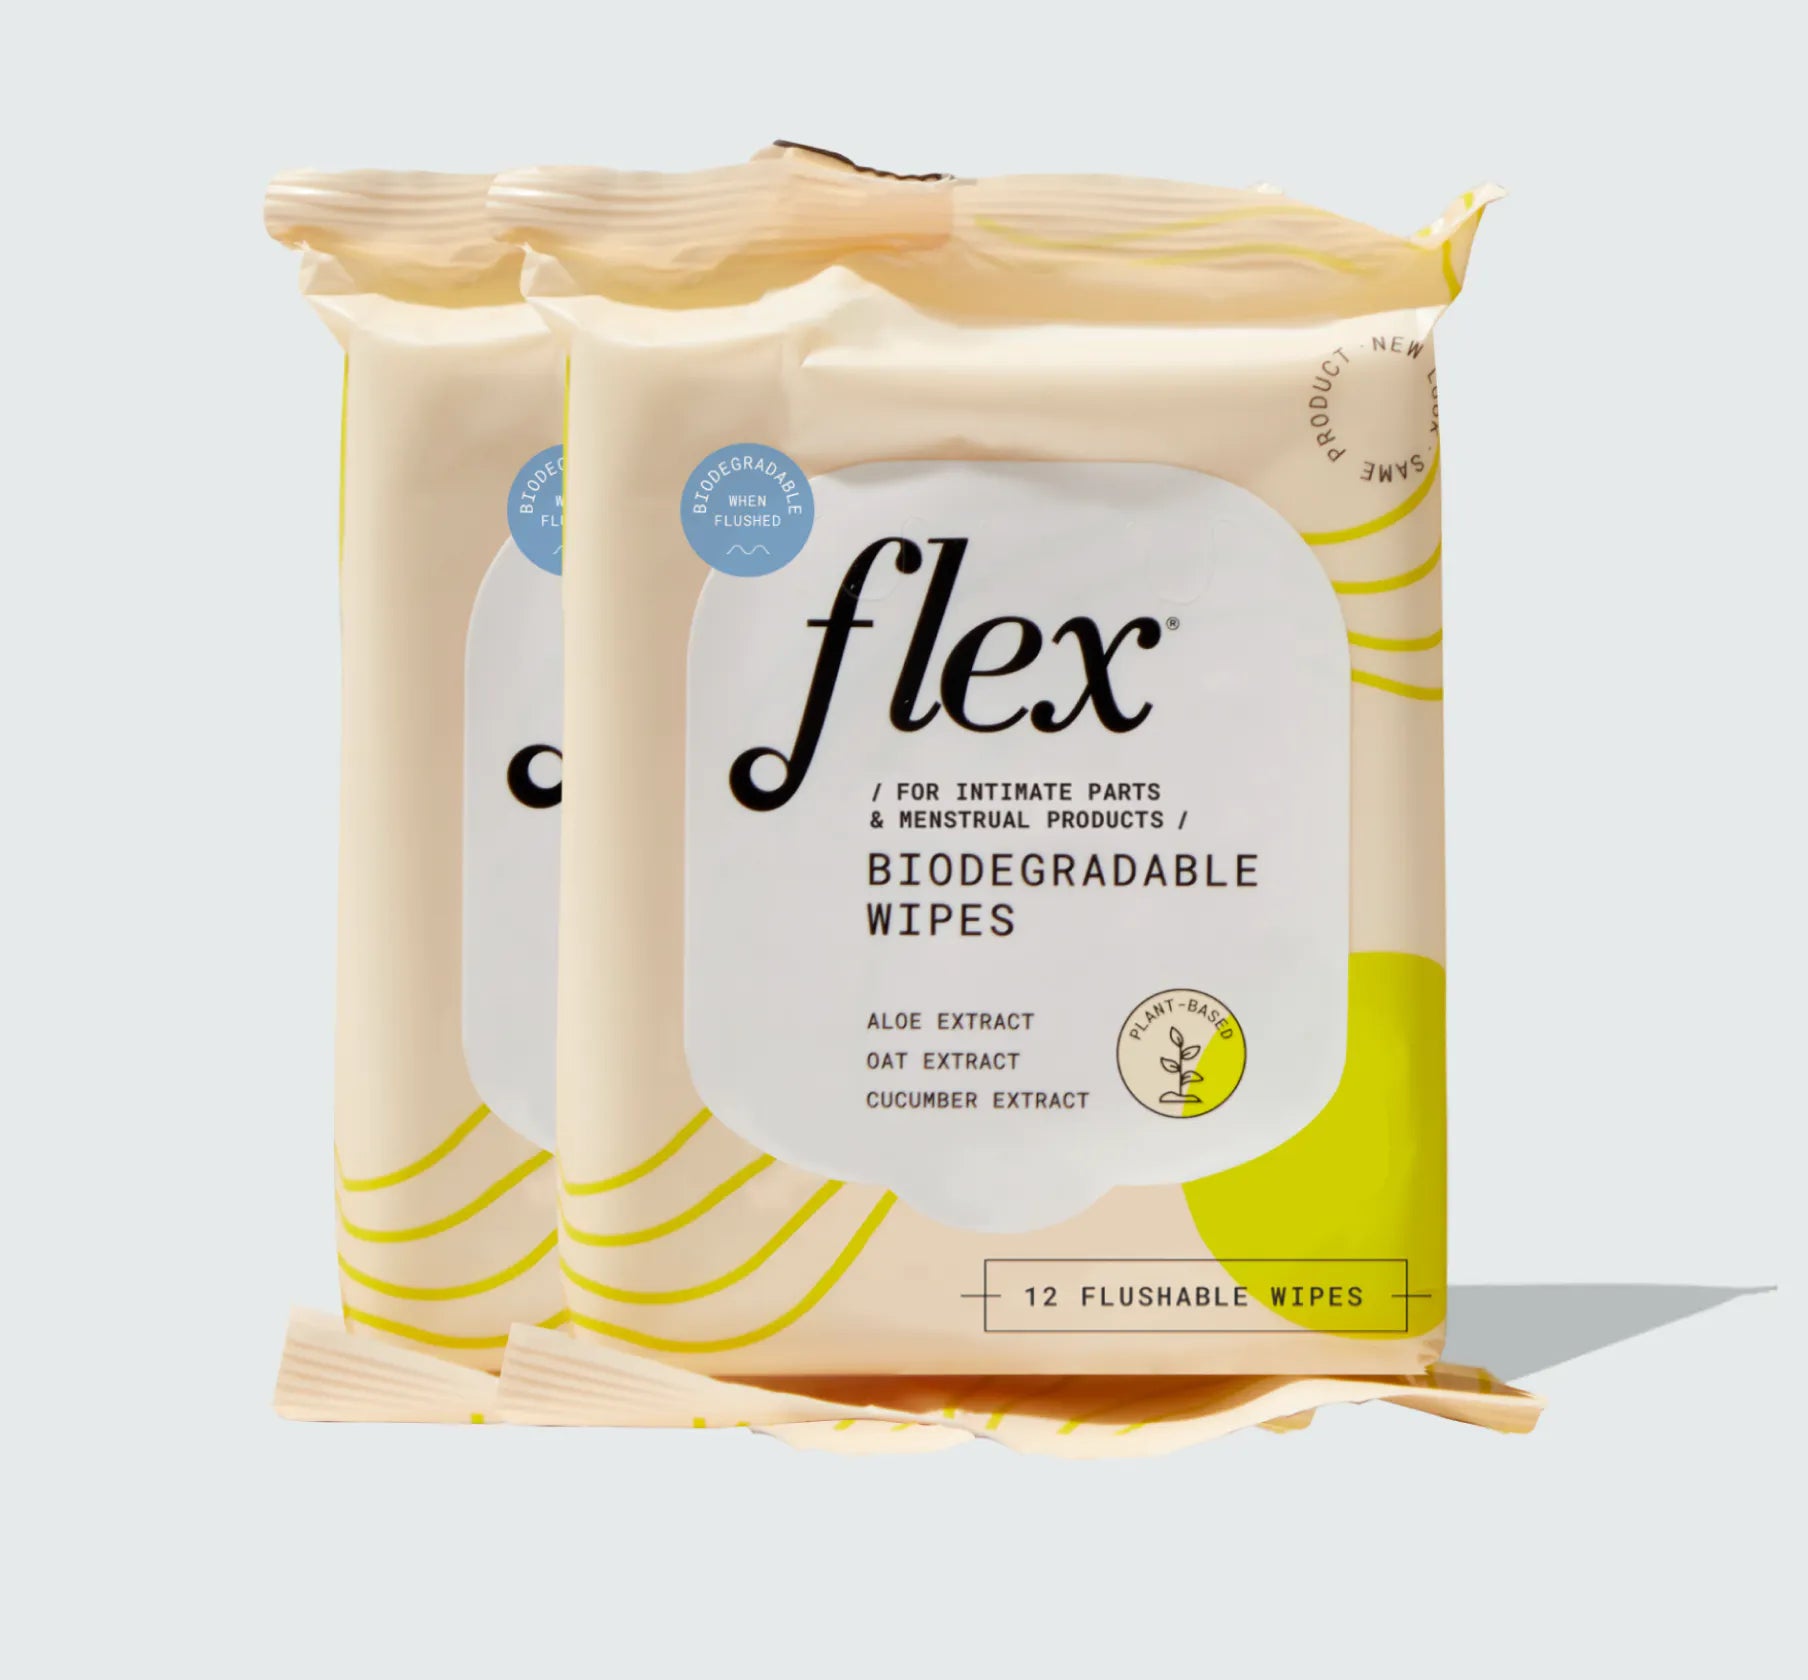 flex-biodegradable-wipes_0211104c-ea68-42fb-b1e8-91a68e9f69d4.webp